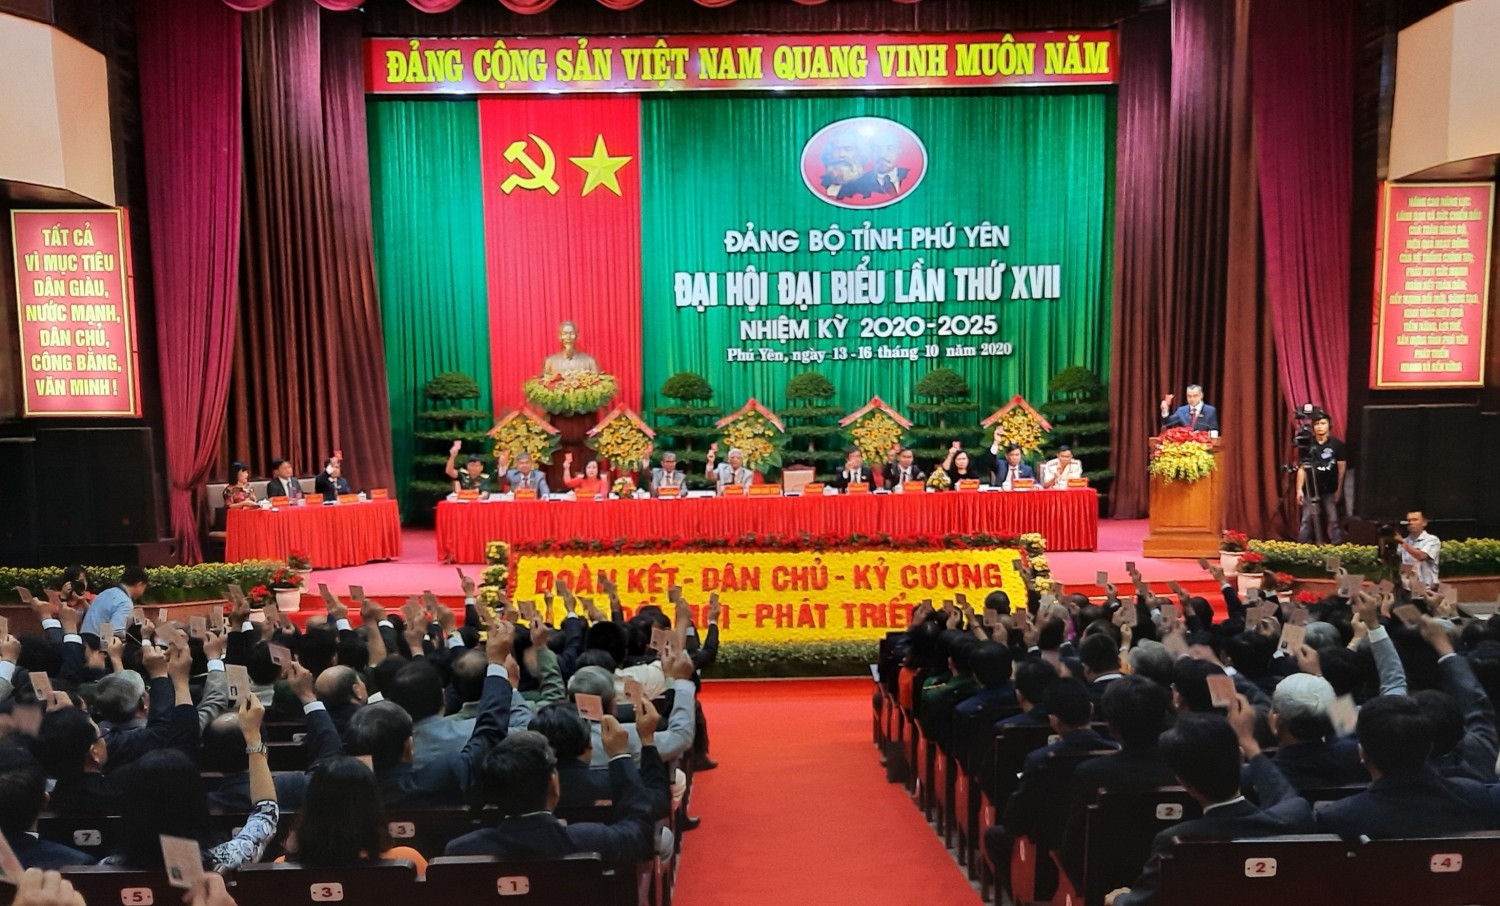 uang cảnh Đại hội đại biểu Đảng bộ tỉnh Phú Yên lần thứ XVII.